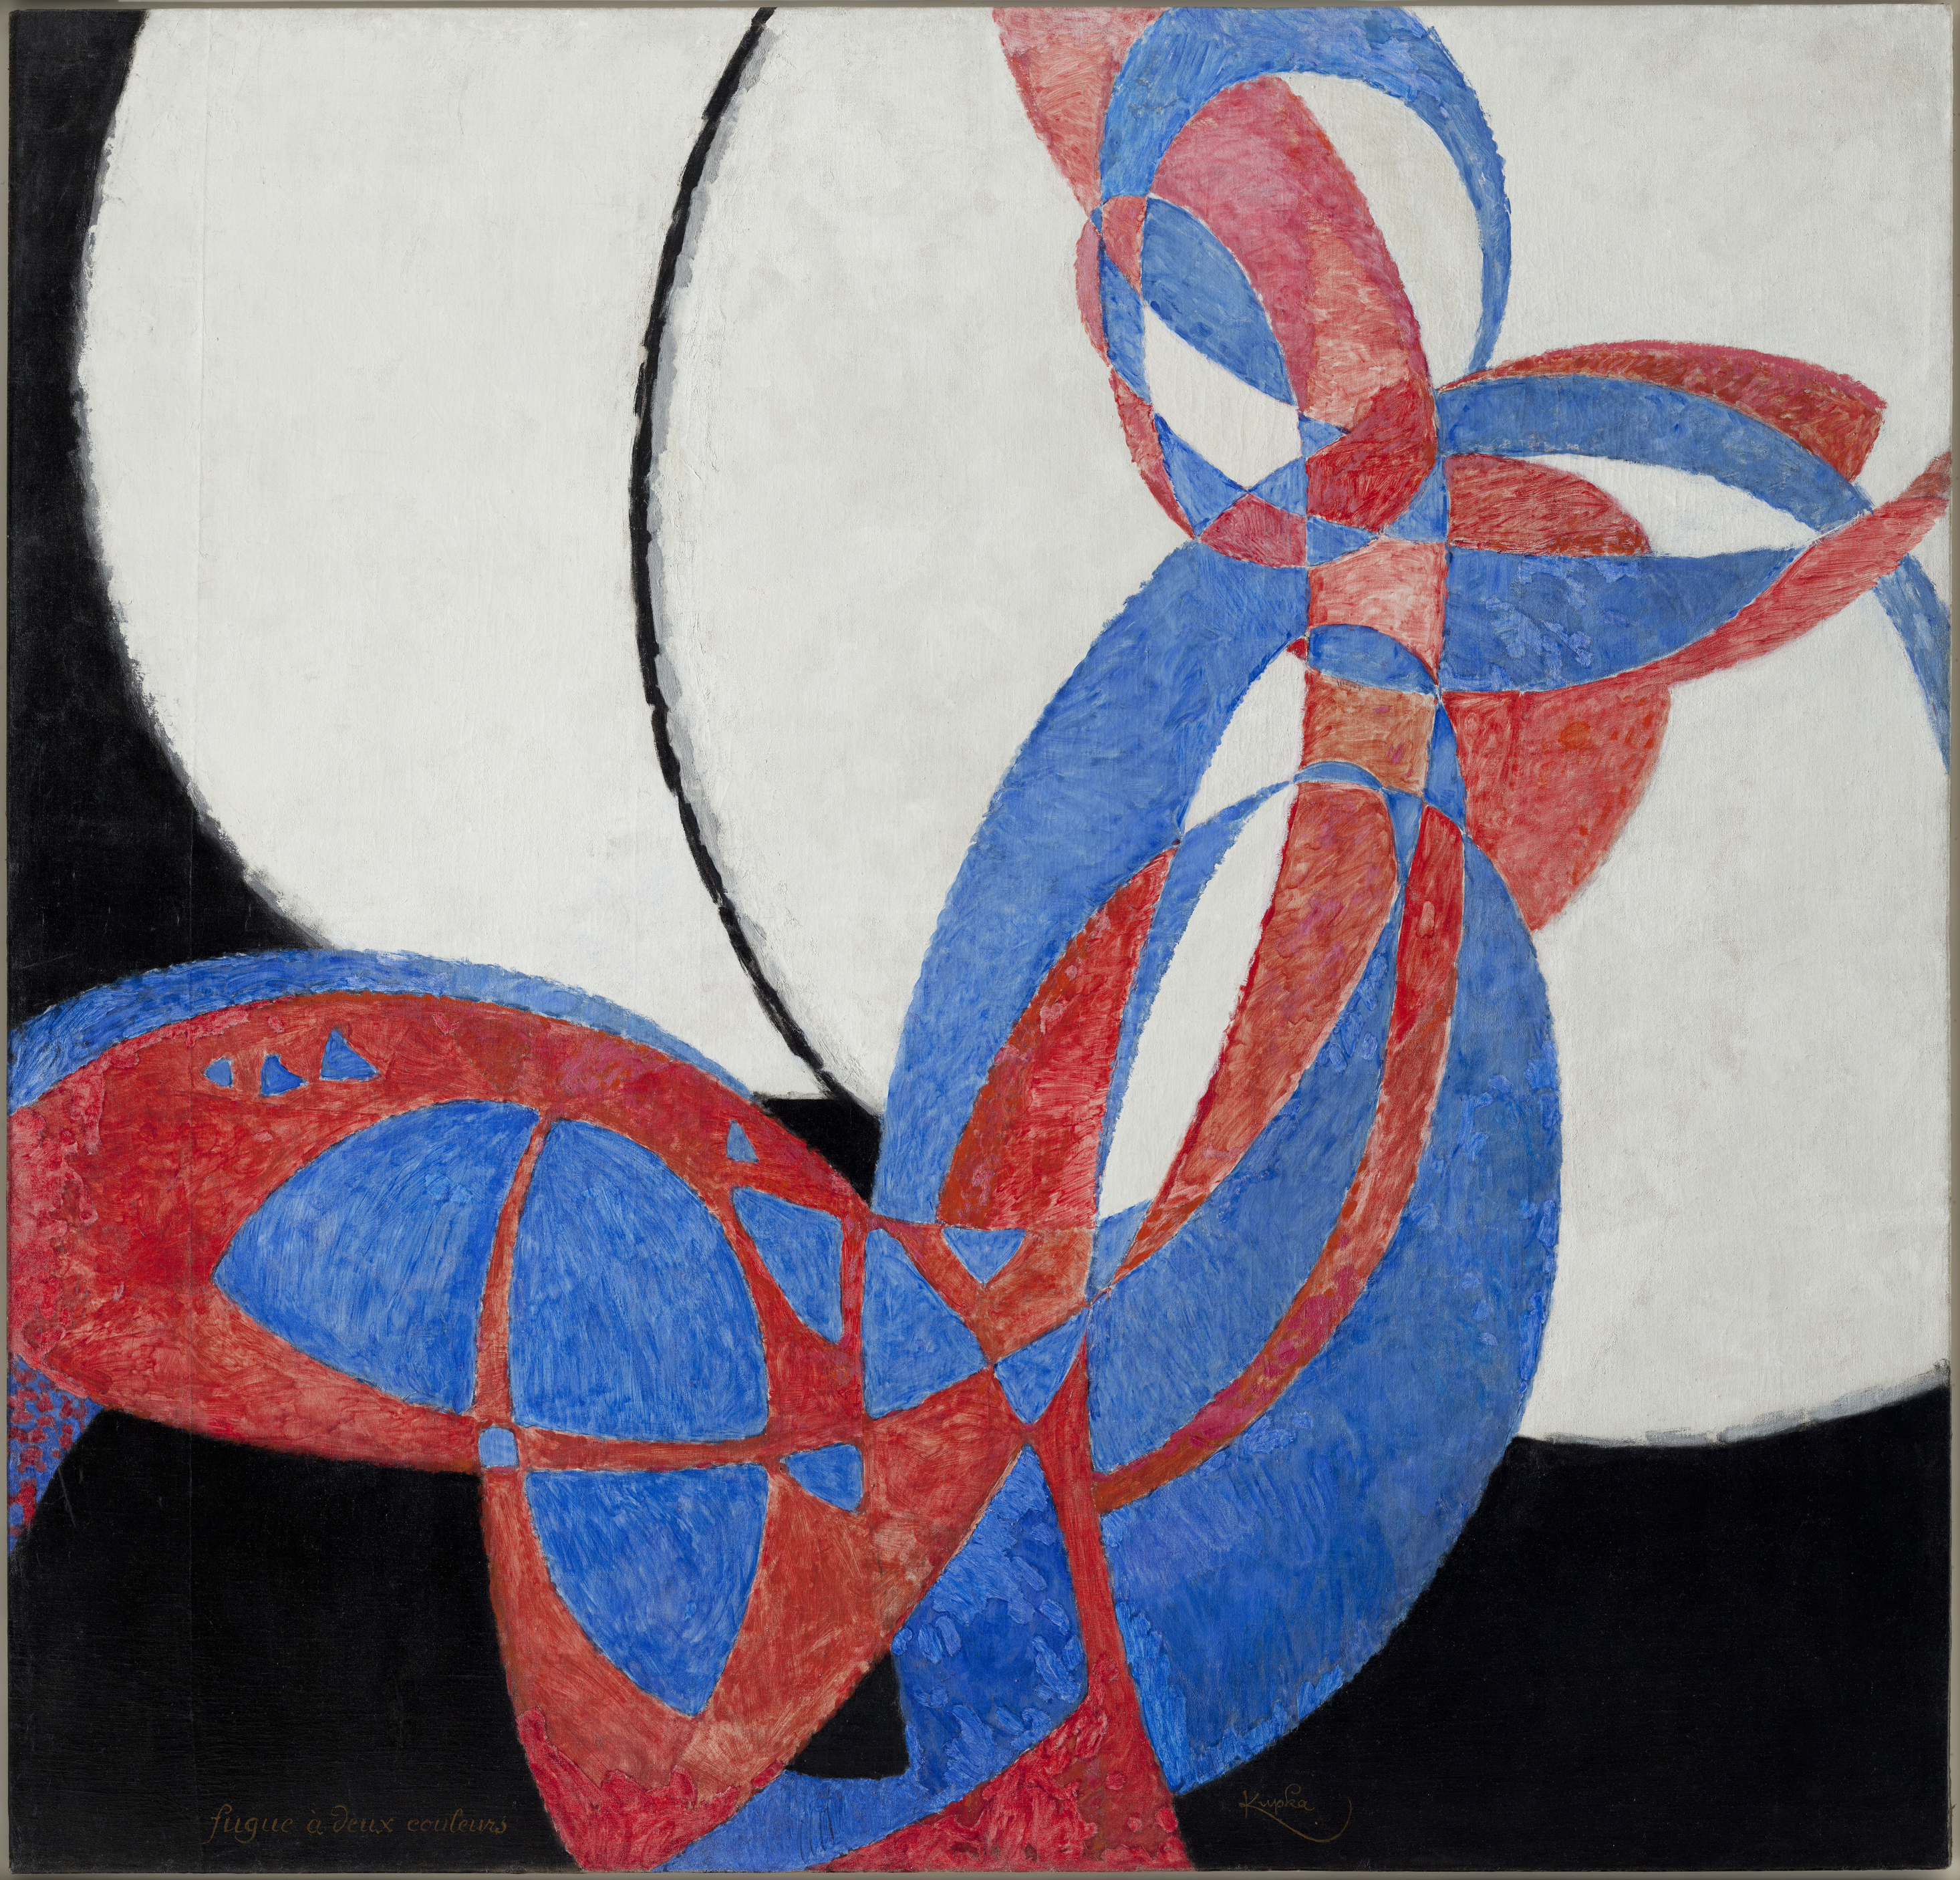 František Kupka, 1912, Amorpha, fugue en deux couleurs (Fugue in Two Colors), 210 x 200 cm, Narodni Galerie, Prague.jpg